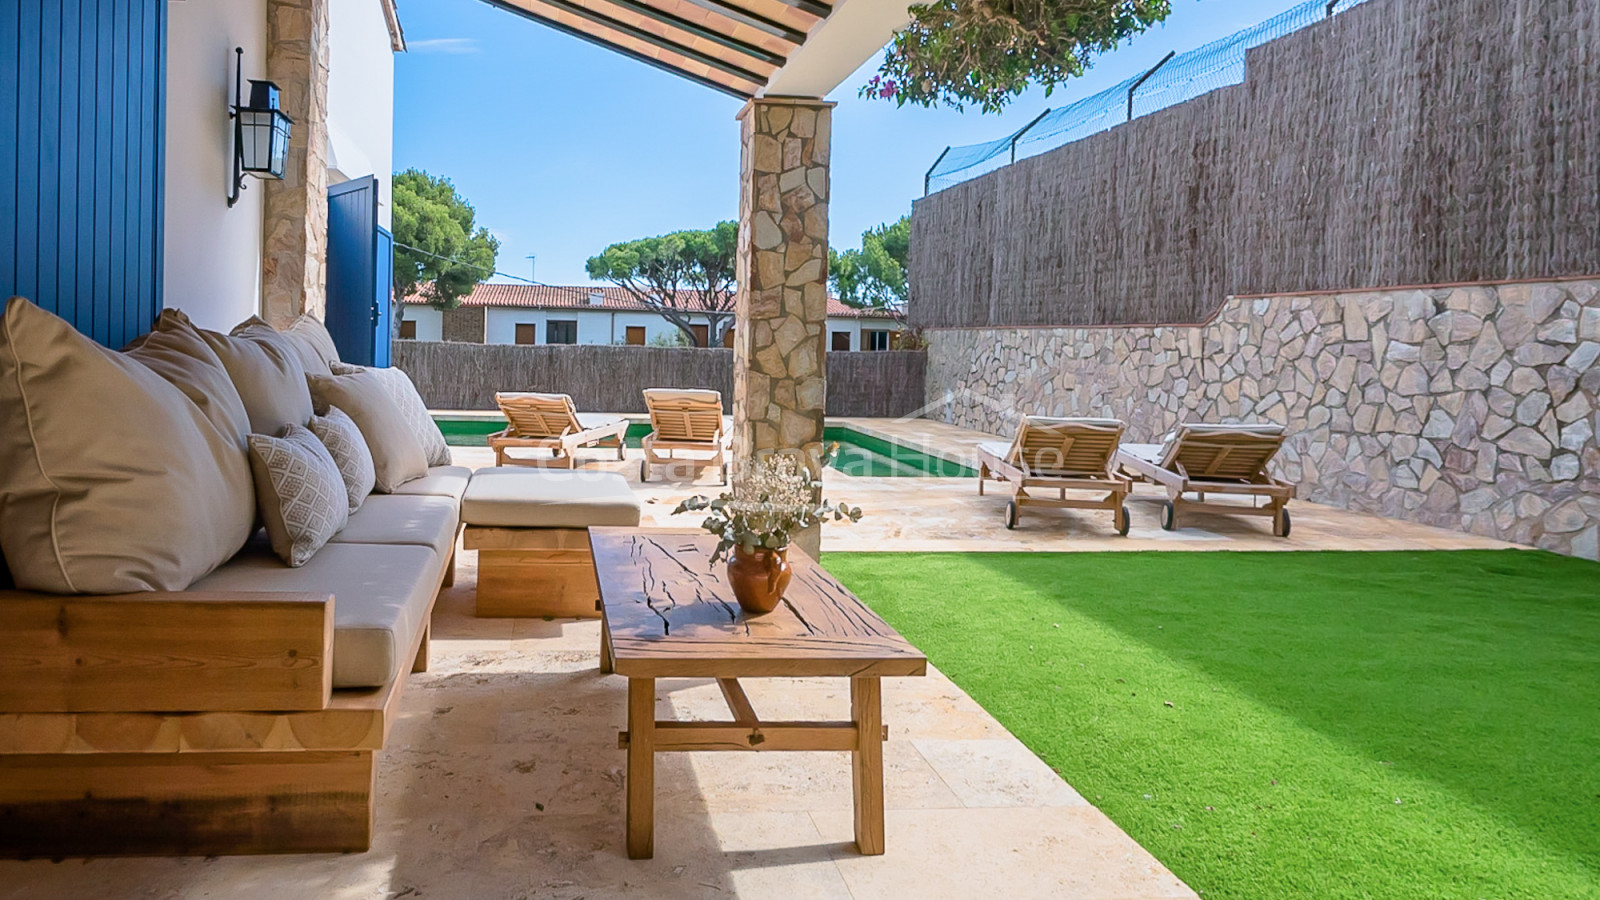 Villa elegante en Calella Palafrugell, 5 min playa, jardín y piscina